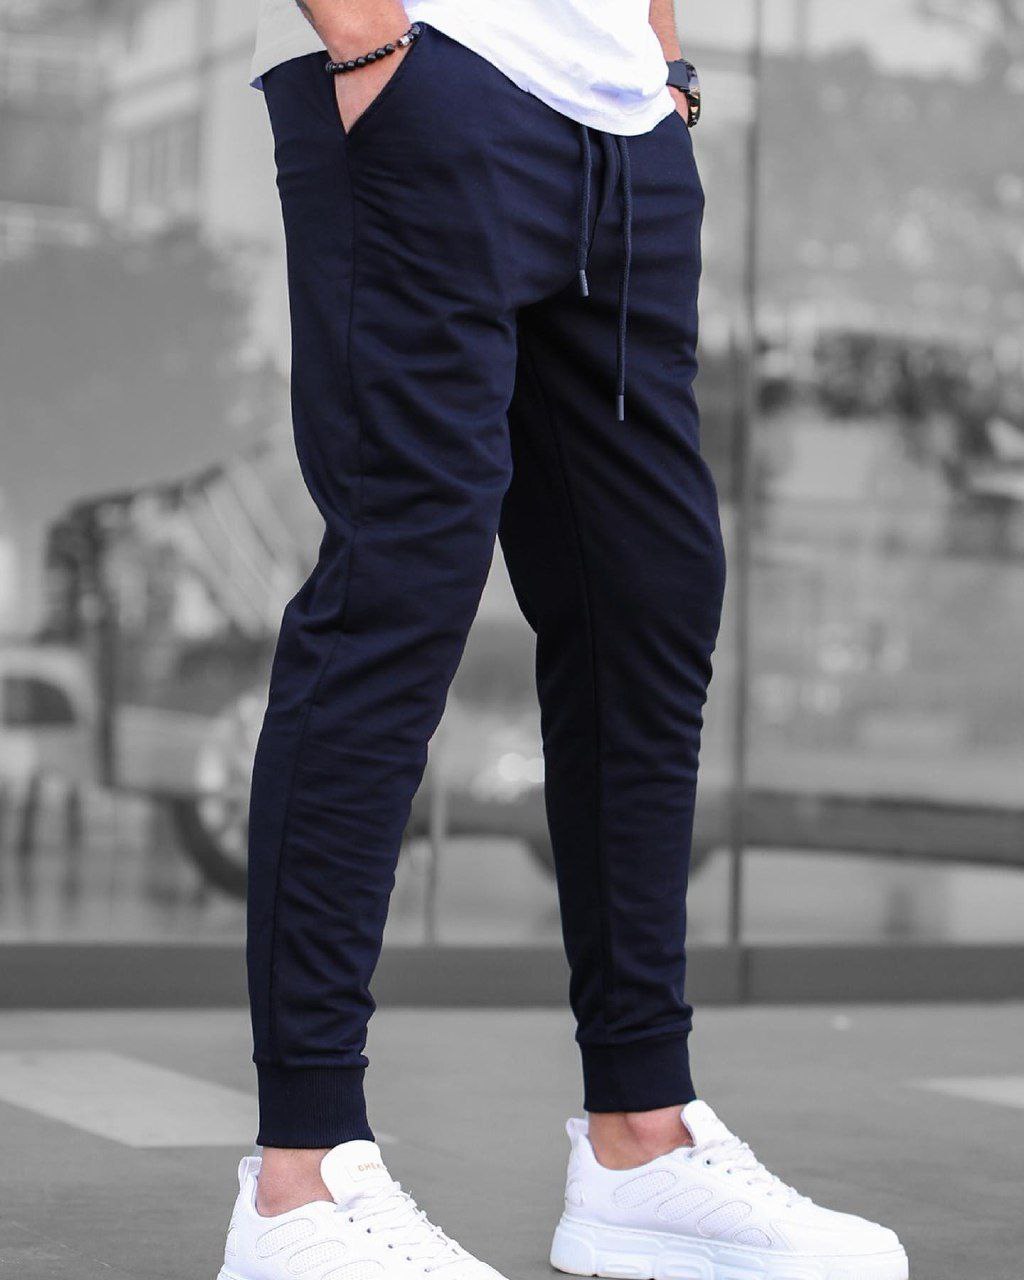 Мужские спортивные штаны трикотажные Reload Step синие / Легкие стильные зауженные спортивки летние - Фото 1